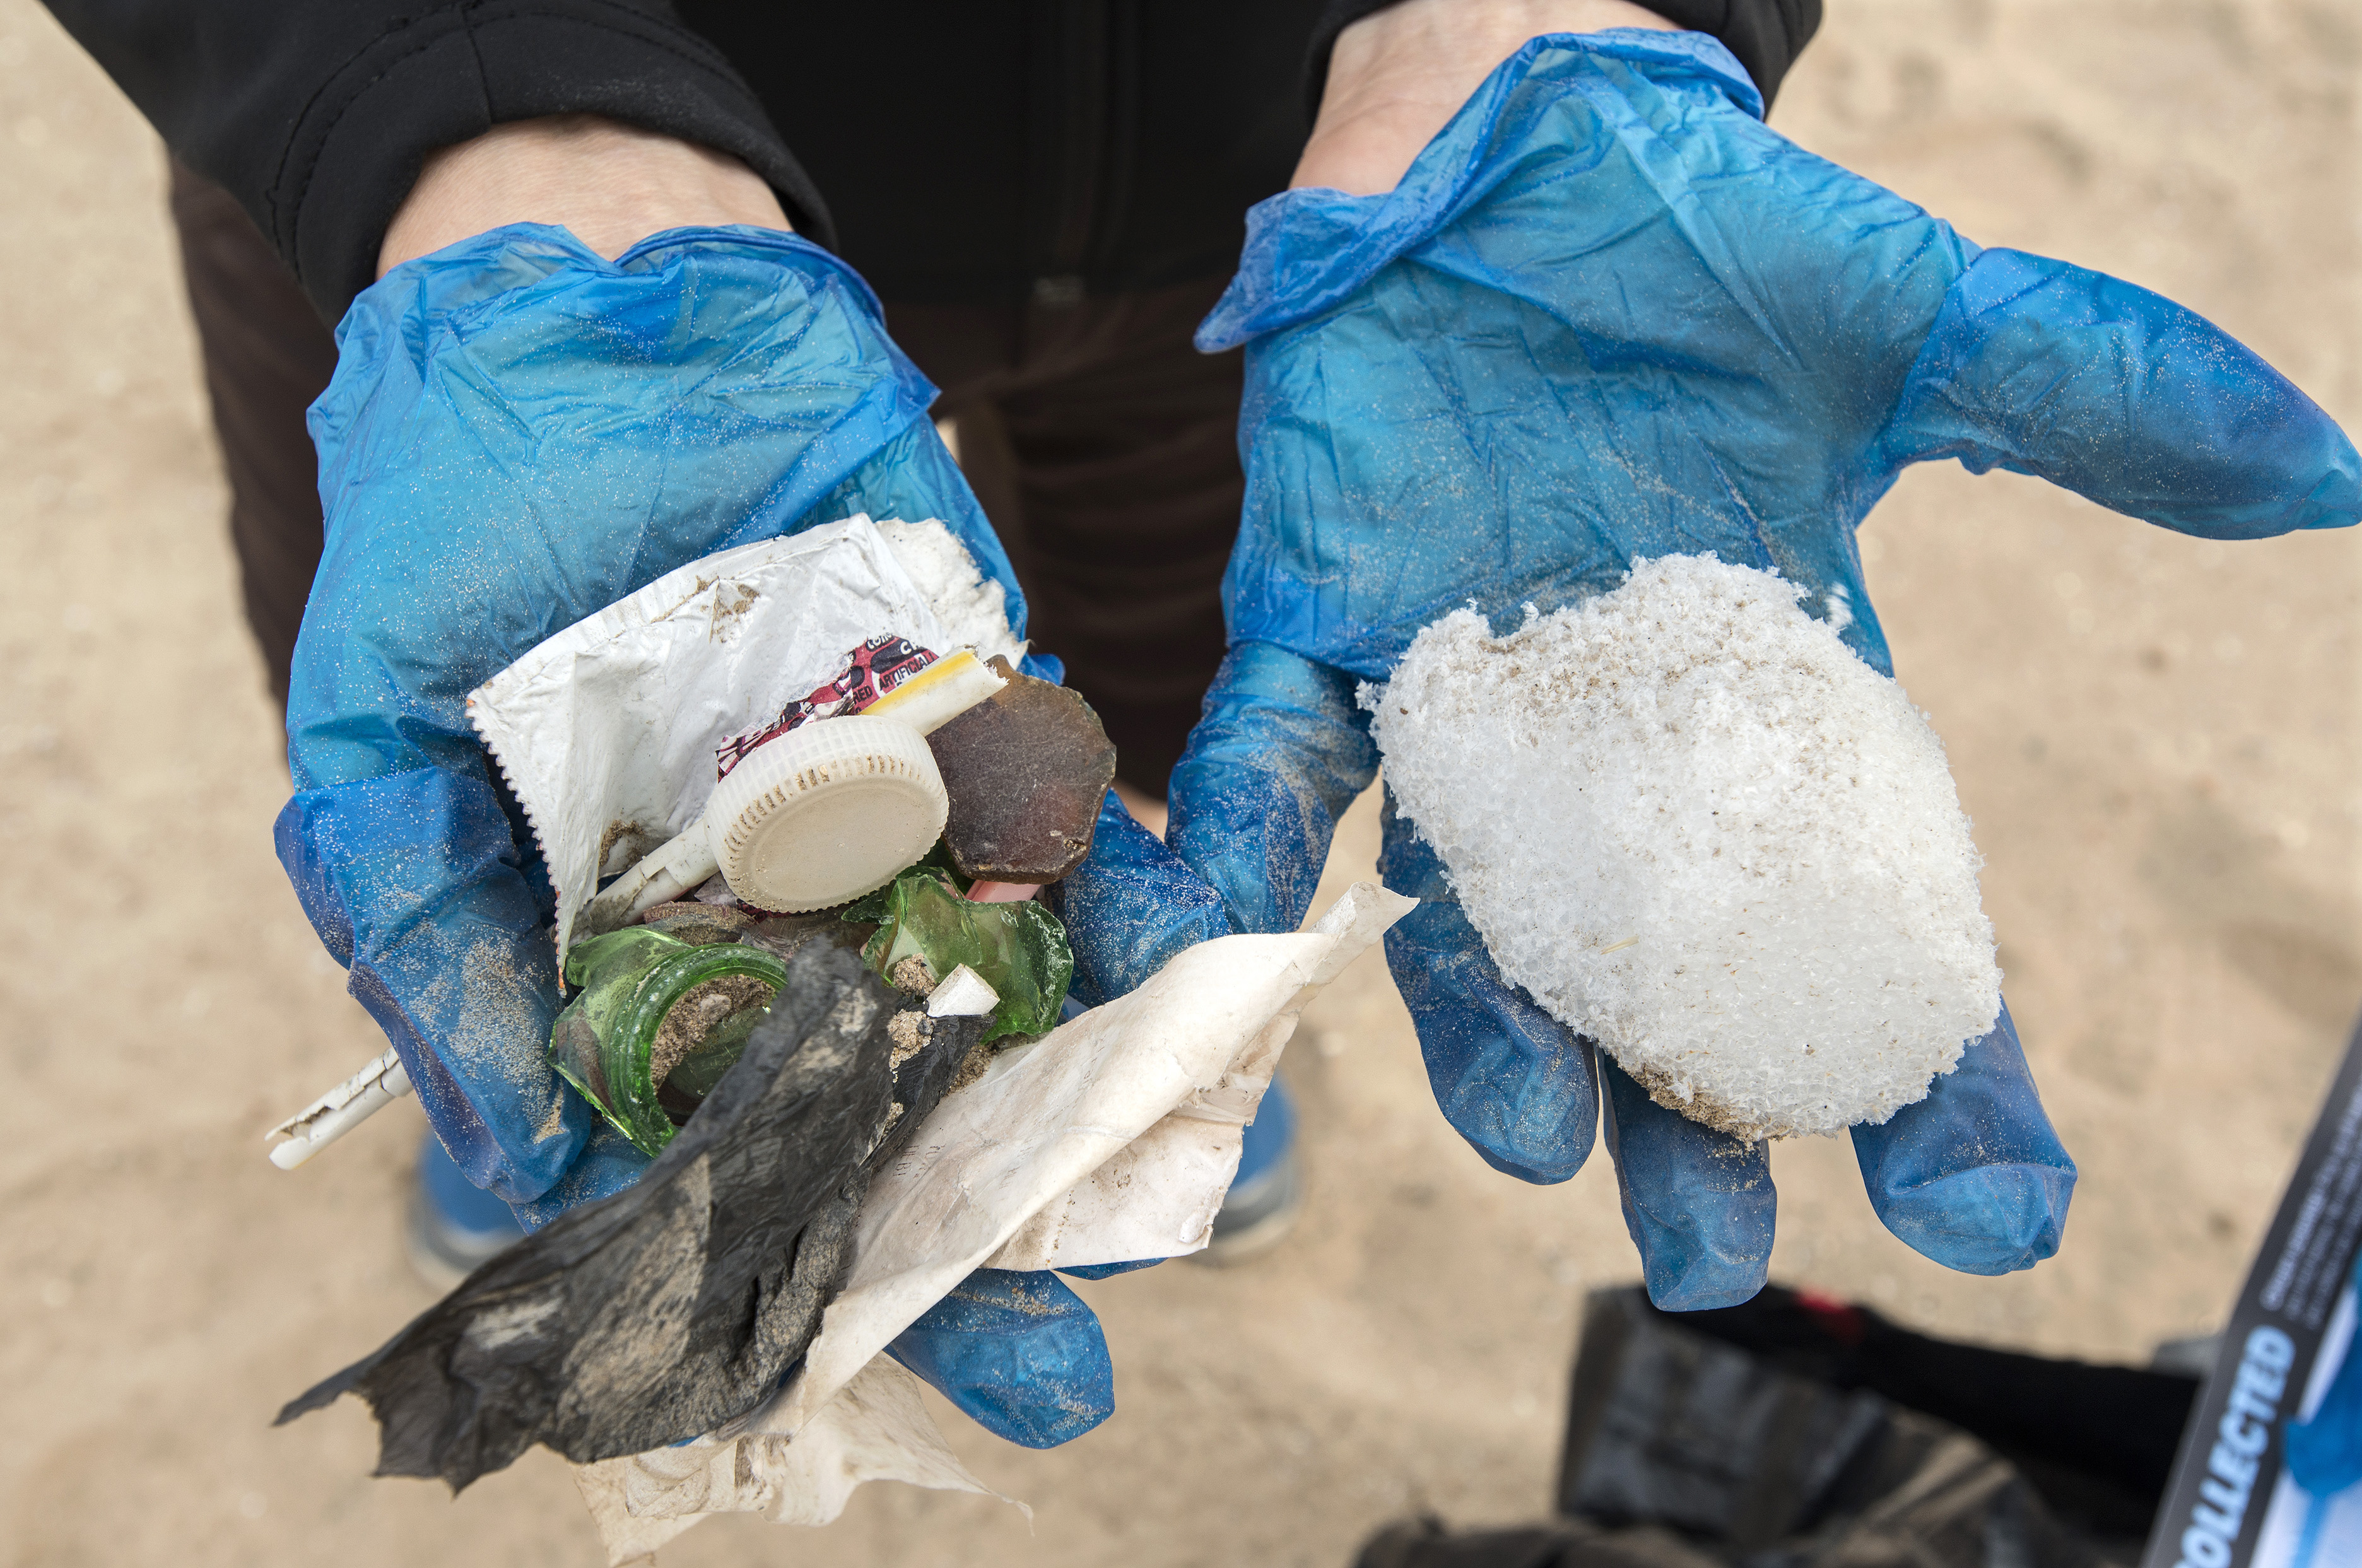 Déchets plastiques ramassés durant le nettoyage de septembre. Photo : Lloyd DeGrane, Alliance for the Great Lakes.